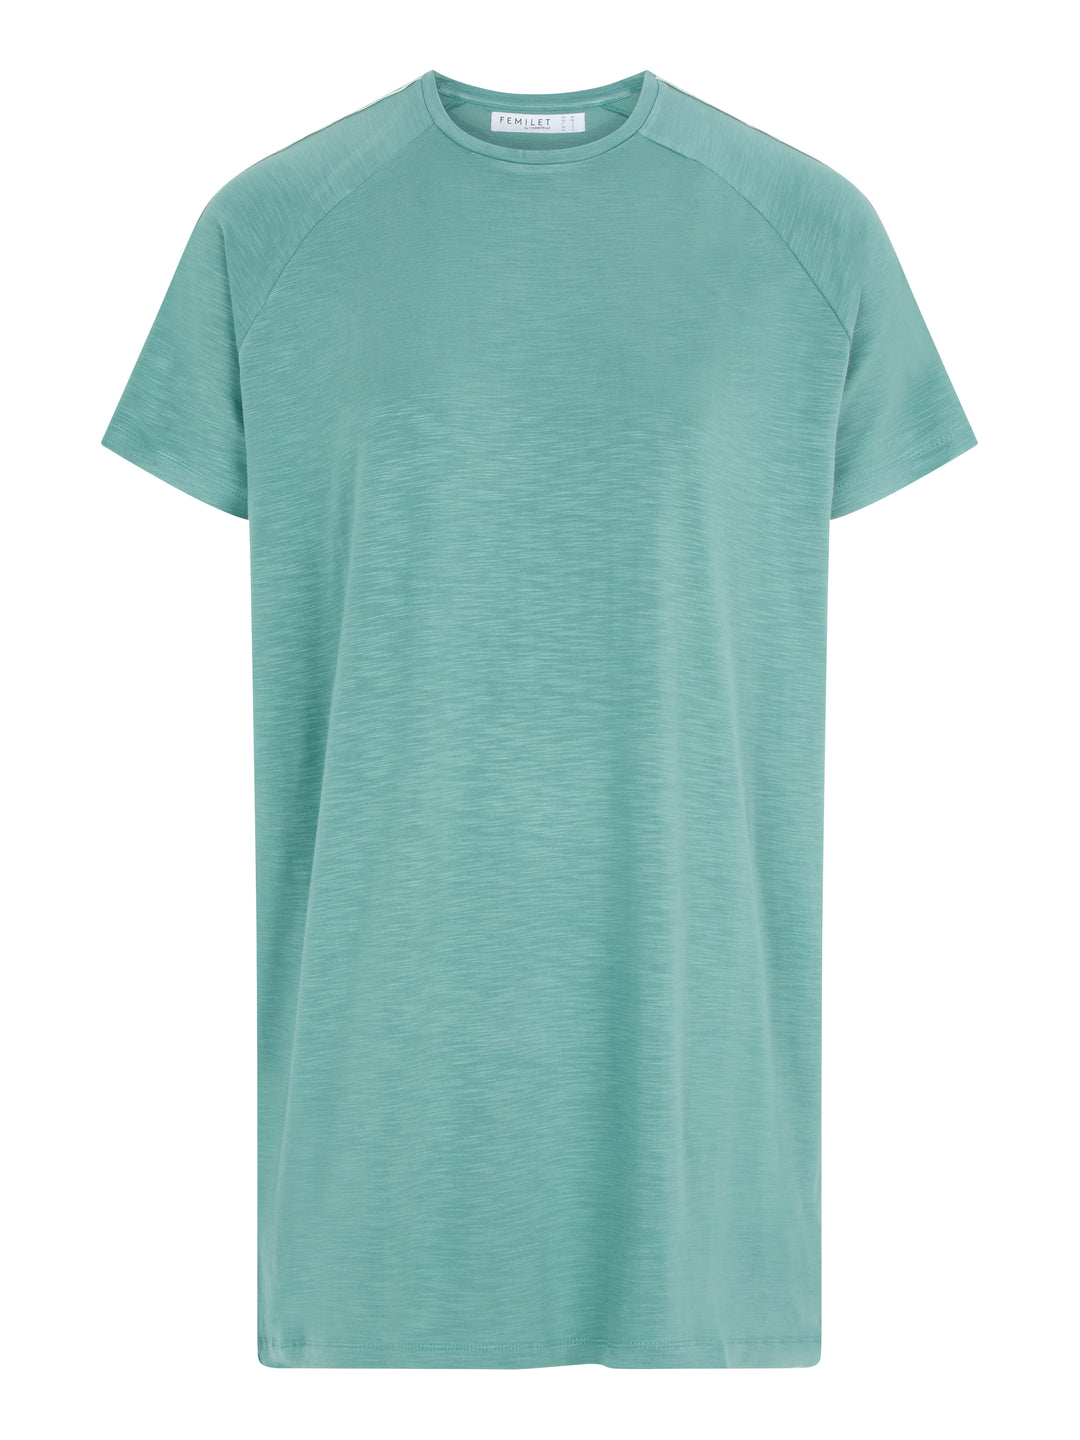 Femilet - Mabel Big Shirt с длинными рукавами и решеткой, зеленый